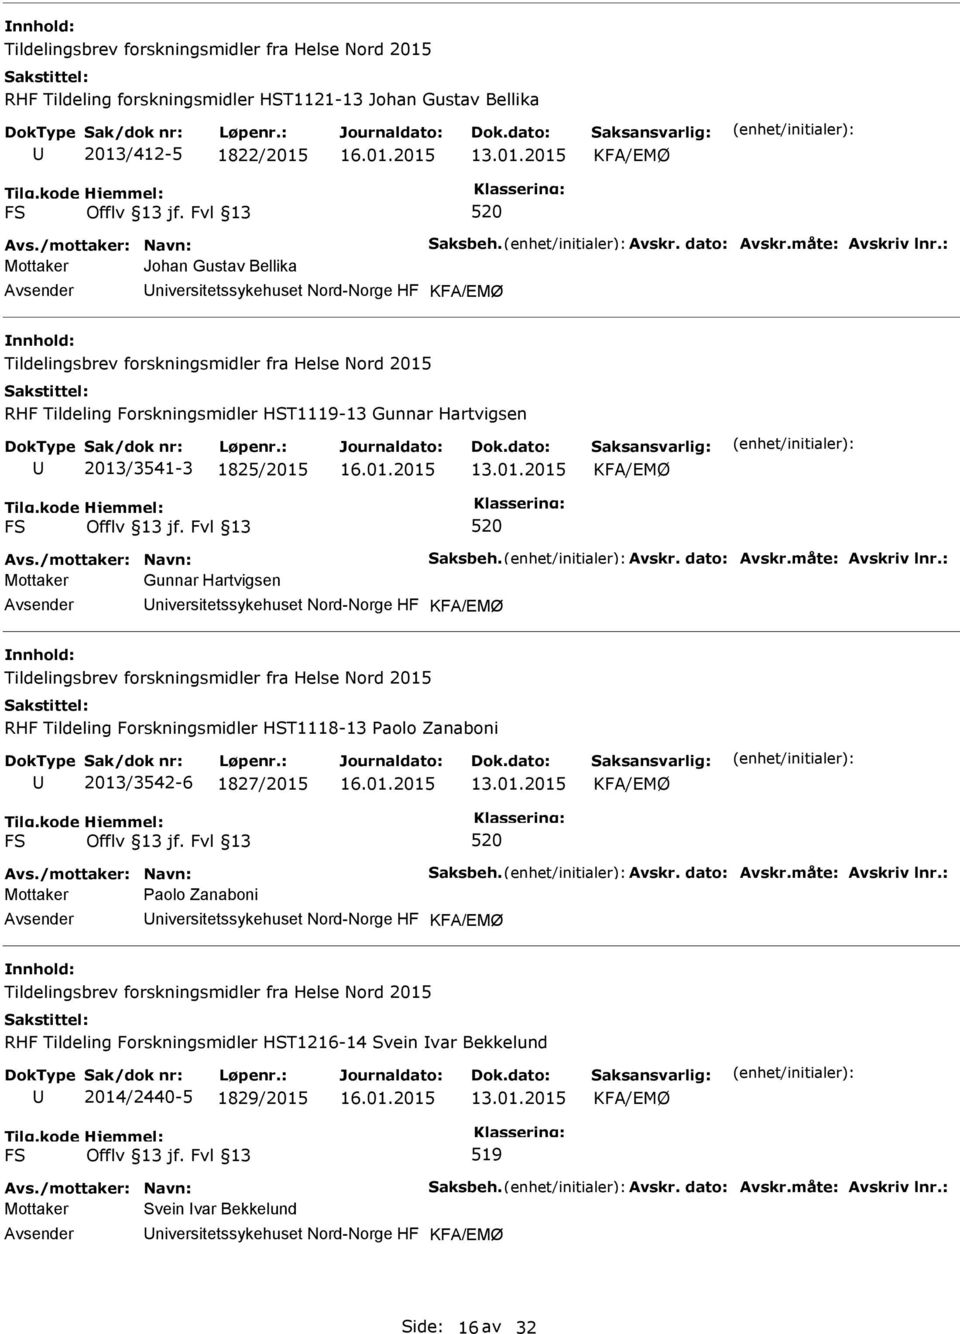 Tildeling Forskningsmidler HST1118-13 Paolo Zanaboni 2013/3542-6 1827/2015 Mottaker Paolo Zanaboni niversitetssykehuset Nord-Norge HF RHF Tildeling